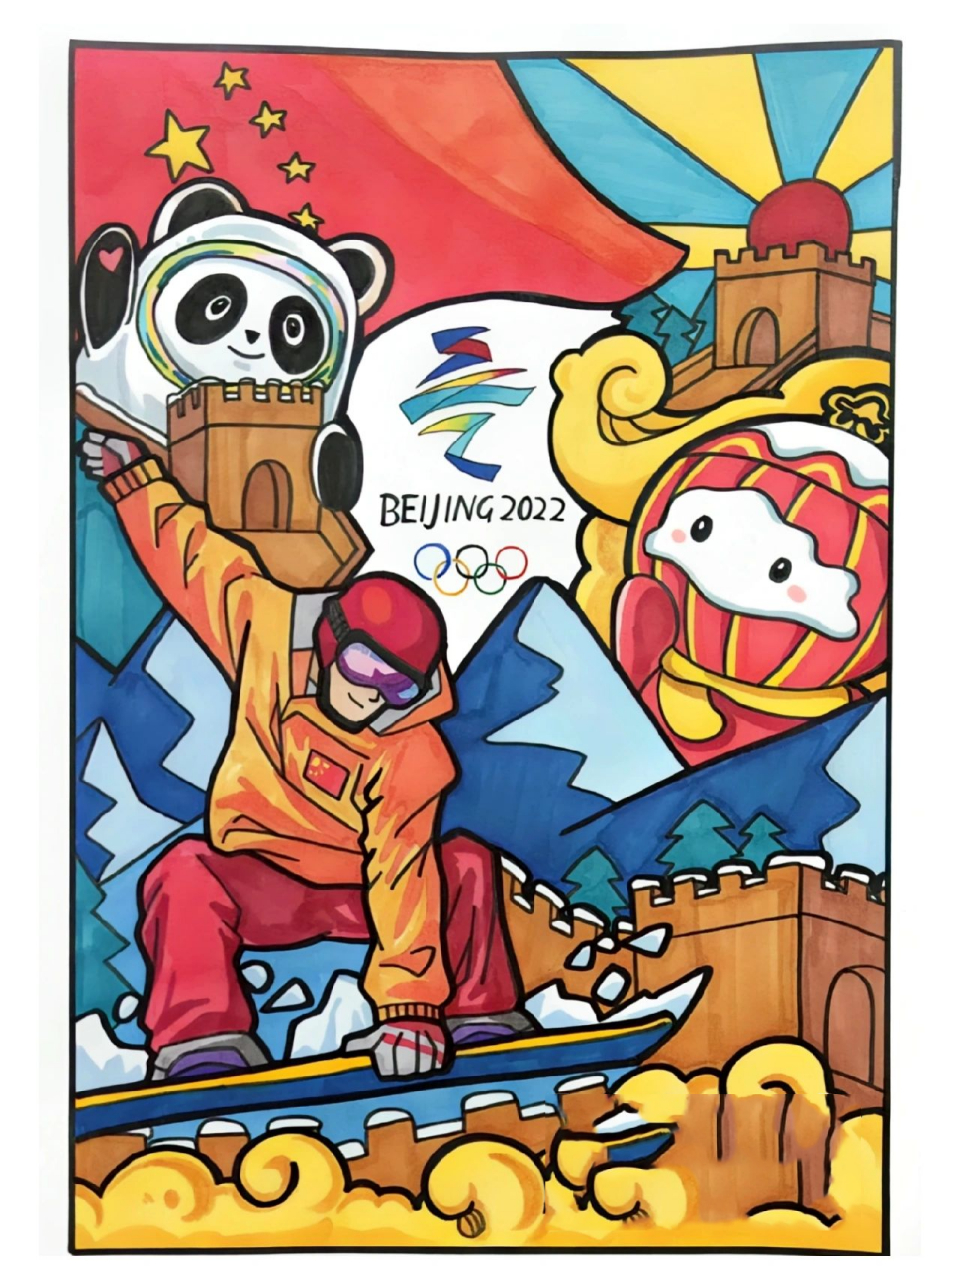 【原创】2022北京冬奥会主题画 预祝北京2022冬奥会圆满成功!